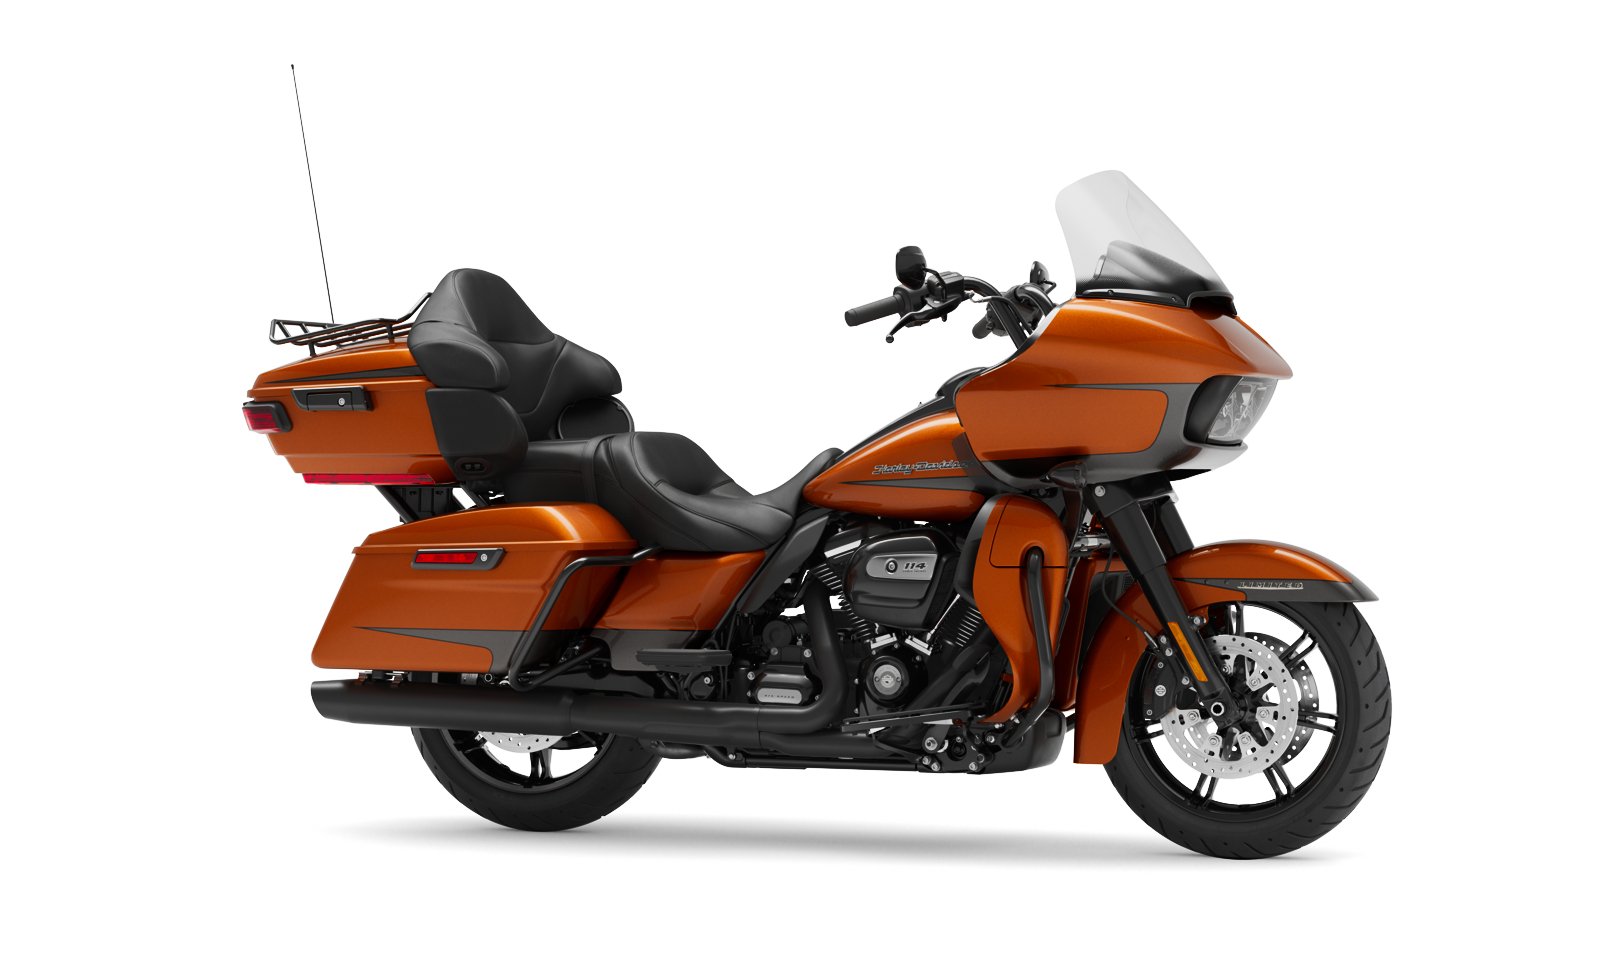 2020 Road Glide Limited Motorcycle Harley Davidson Deutschland